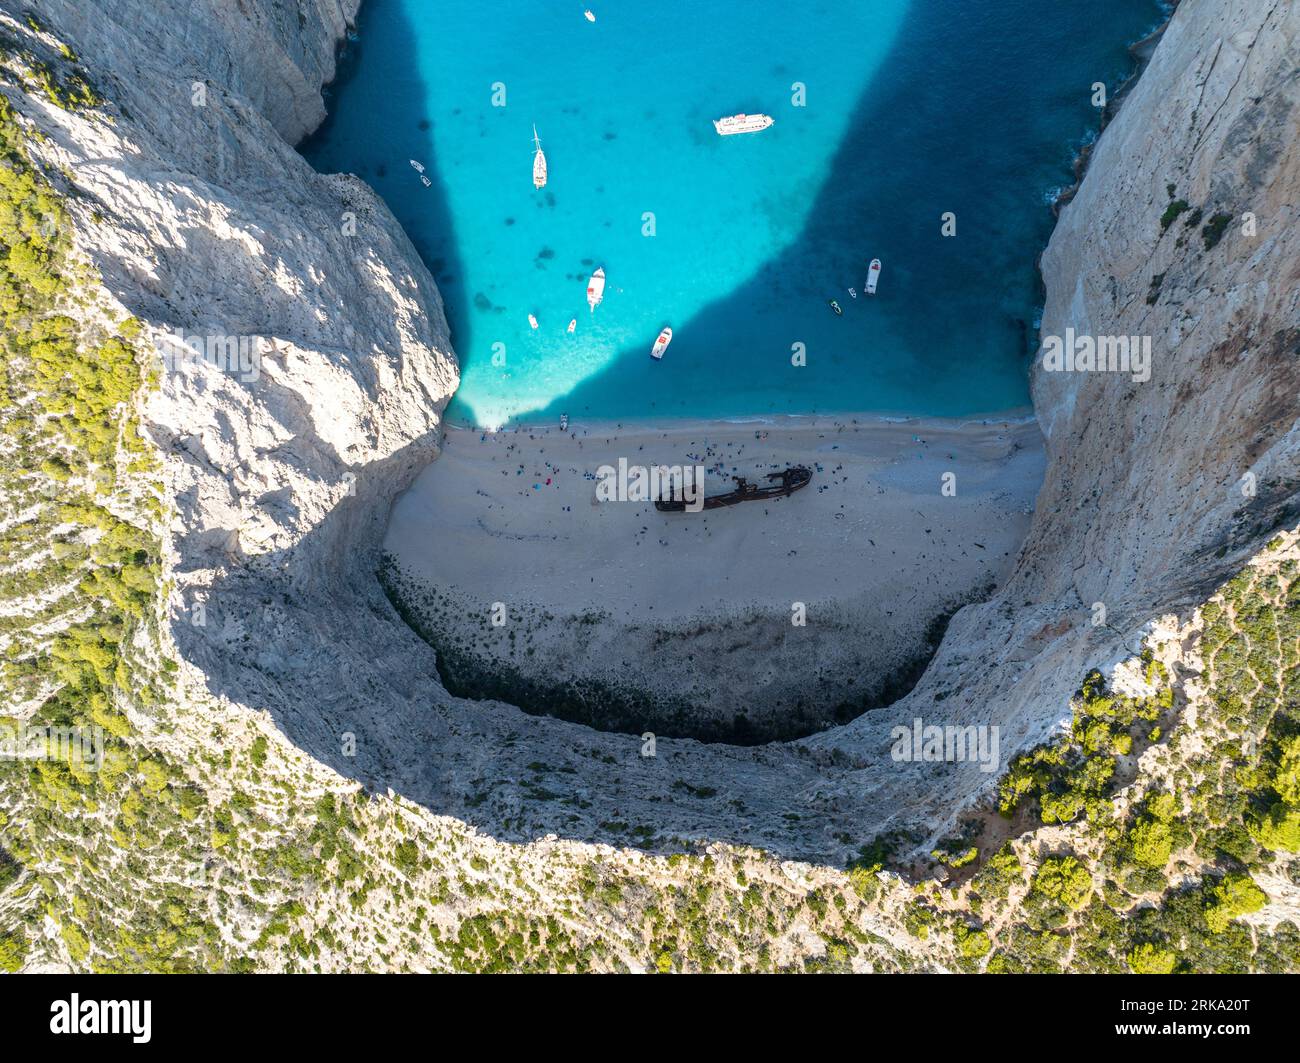 Plage de Navagio (Anafonitria), baie du Naufrage, île de Zante (Zakynthos), Péloponnèse, Grèce Stockfoto